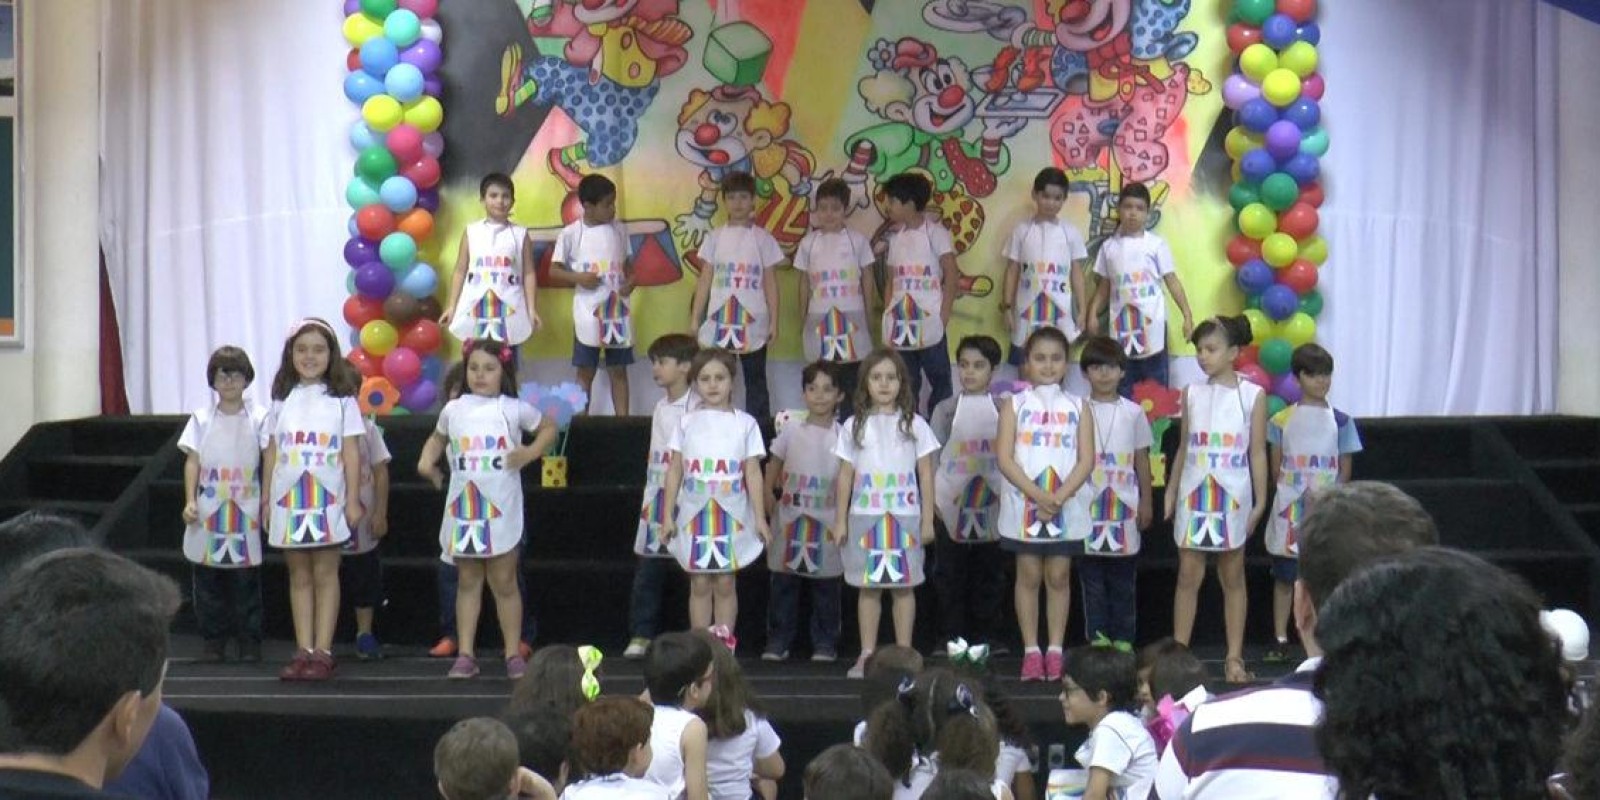 2ª Parada Poética: Escola Prof. Jairo Grossi realiza espetáculo de danças e declamação de poesias